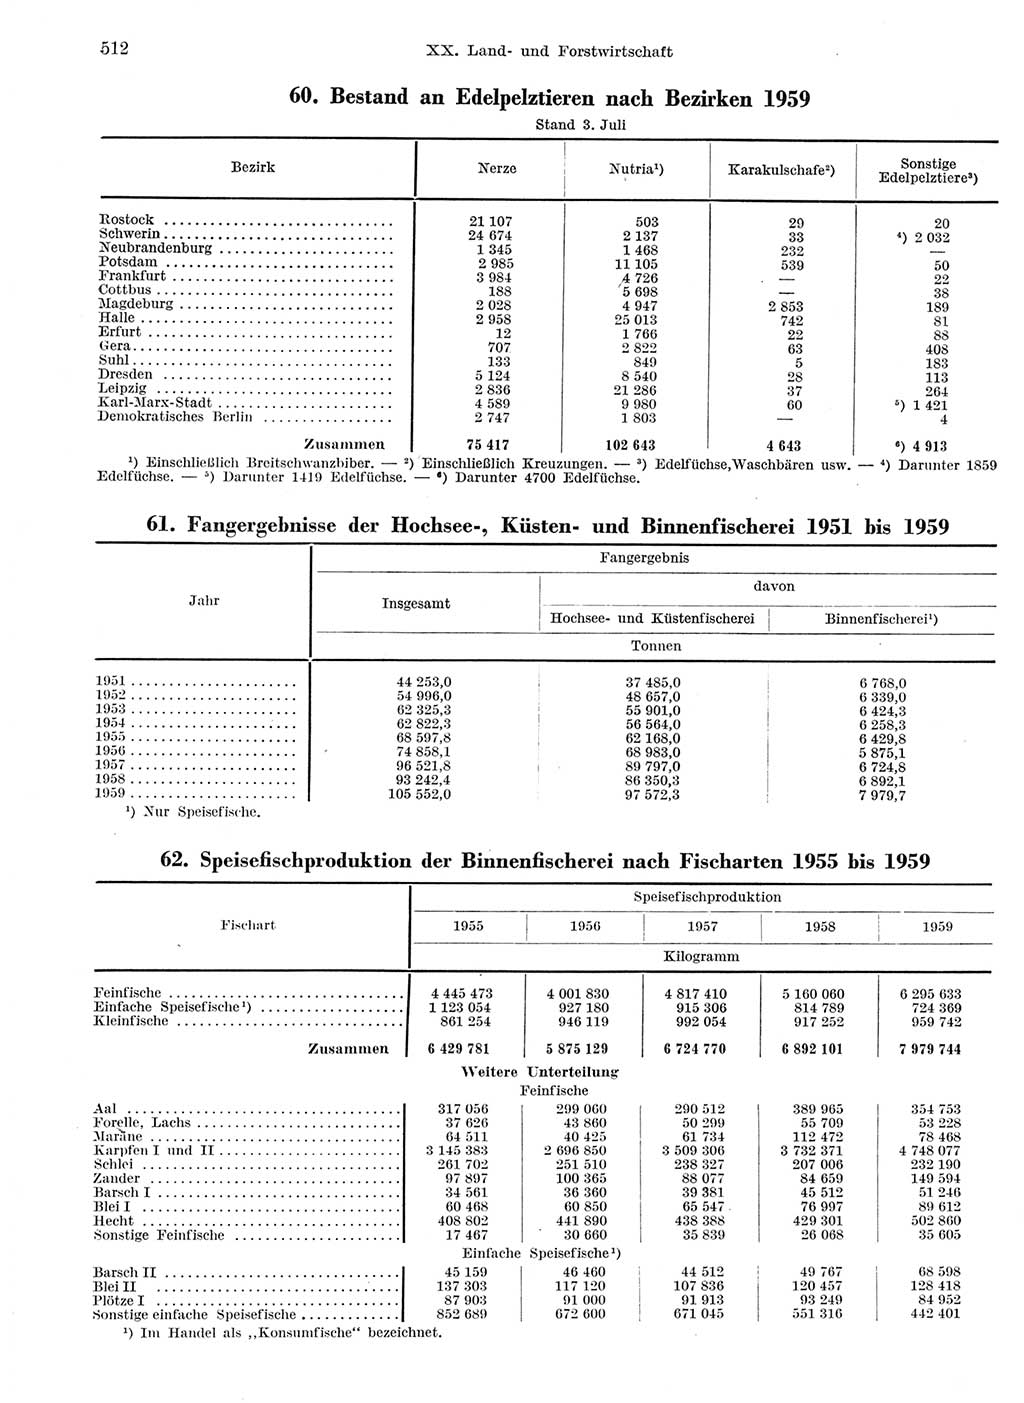 Statistisches Jahrbuch der Deutschen Demokratischen Republik (DDR) 1959, Seite 512 (Stat. Jb. DDR 1959, S. 512)